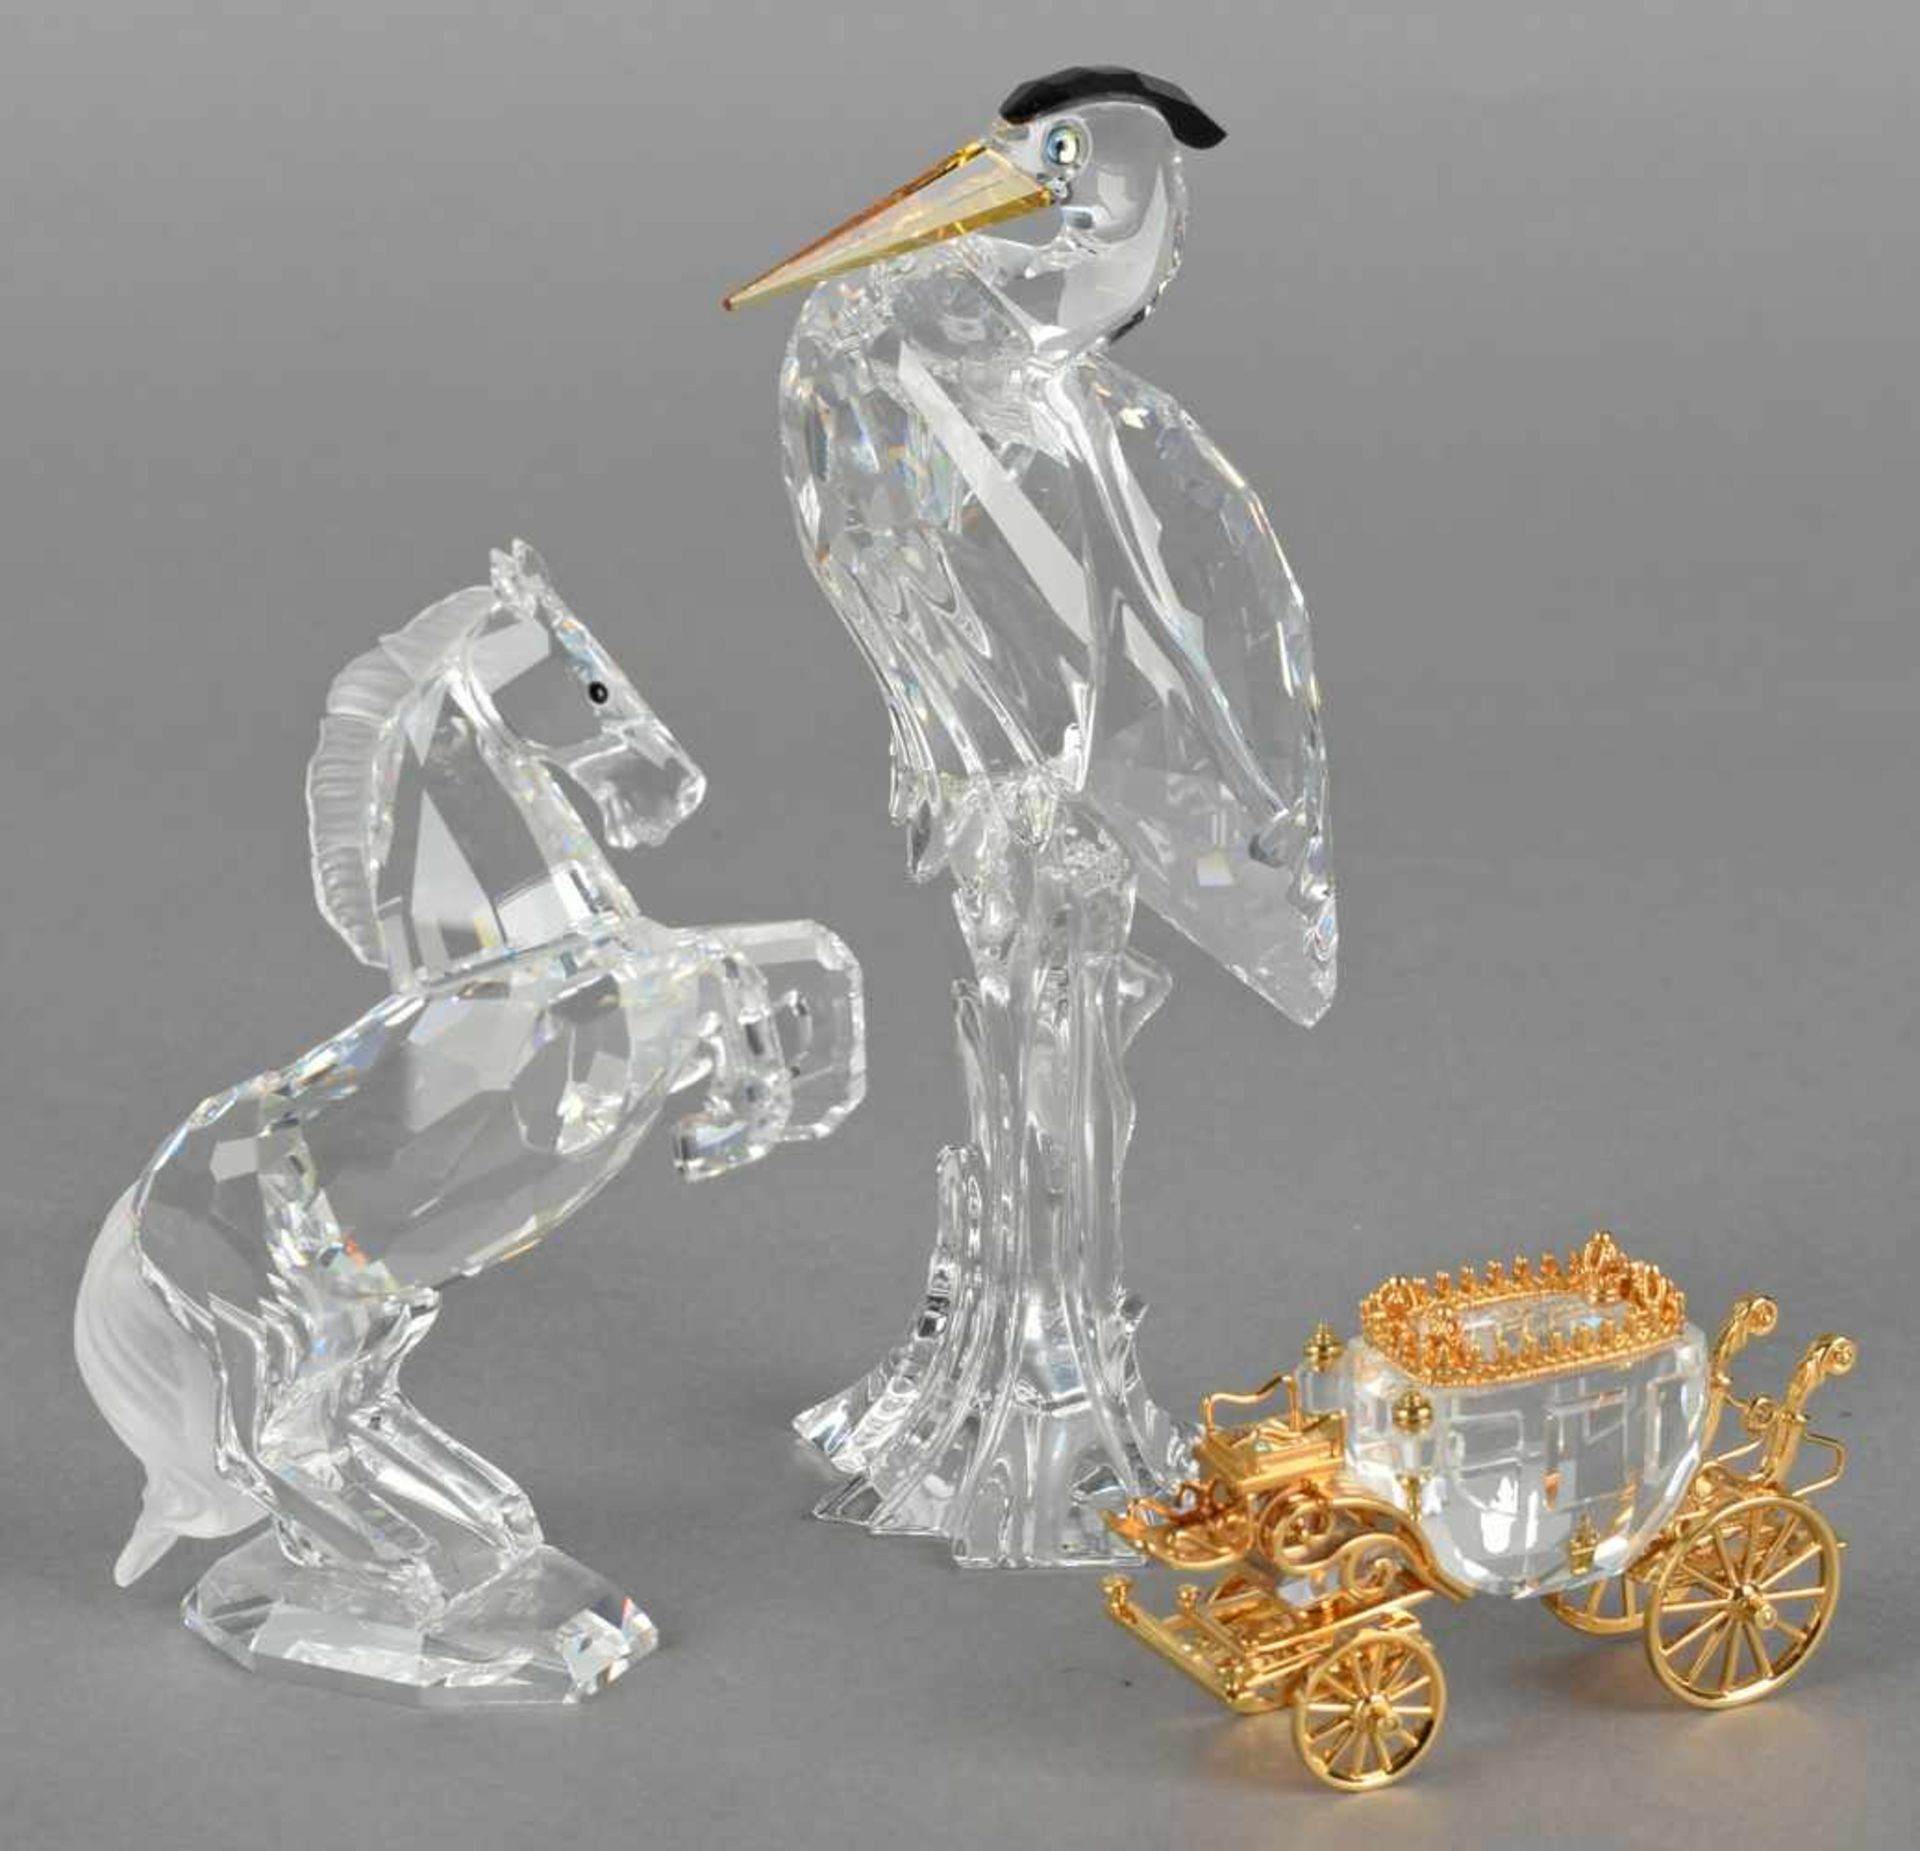 Drei Swarovski-Figuren dabei: steigendes Pferd, Reiher und Kutsche mit vergoldeten Elementen, - Bild 2 aus 2